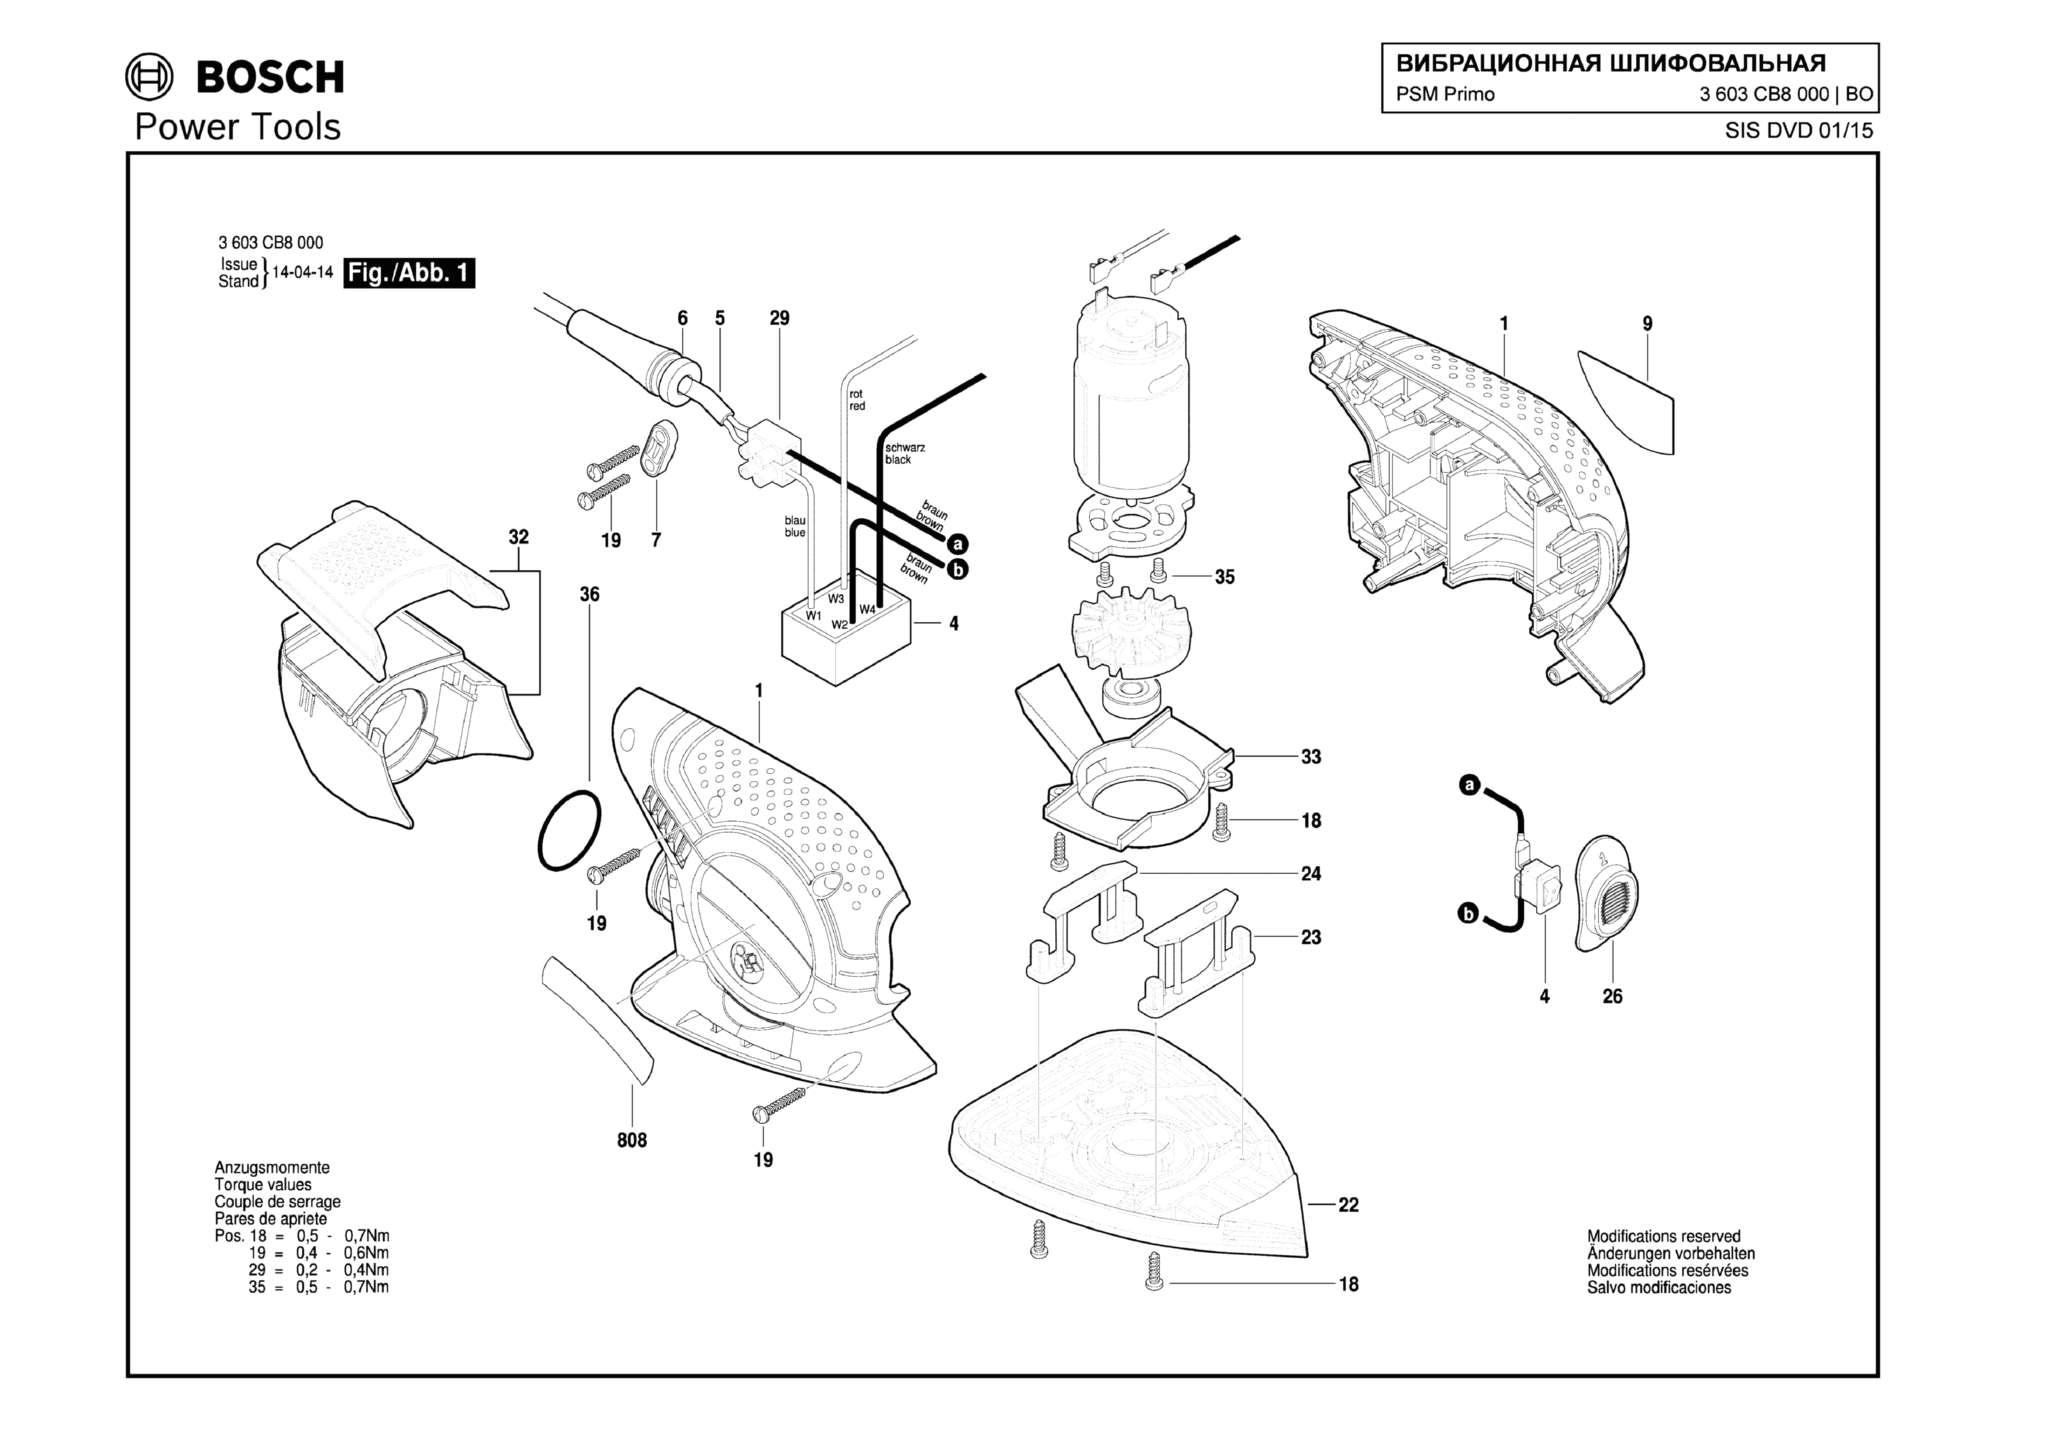 Запчасти, схема и деталировка Bosch PSM PRIMO (ТИП 3603CB8000)